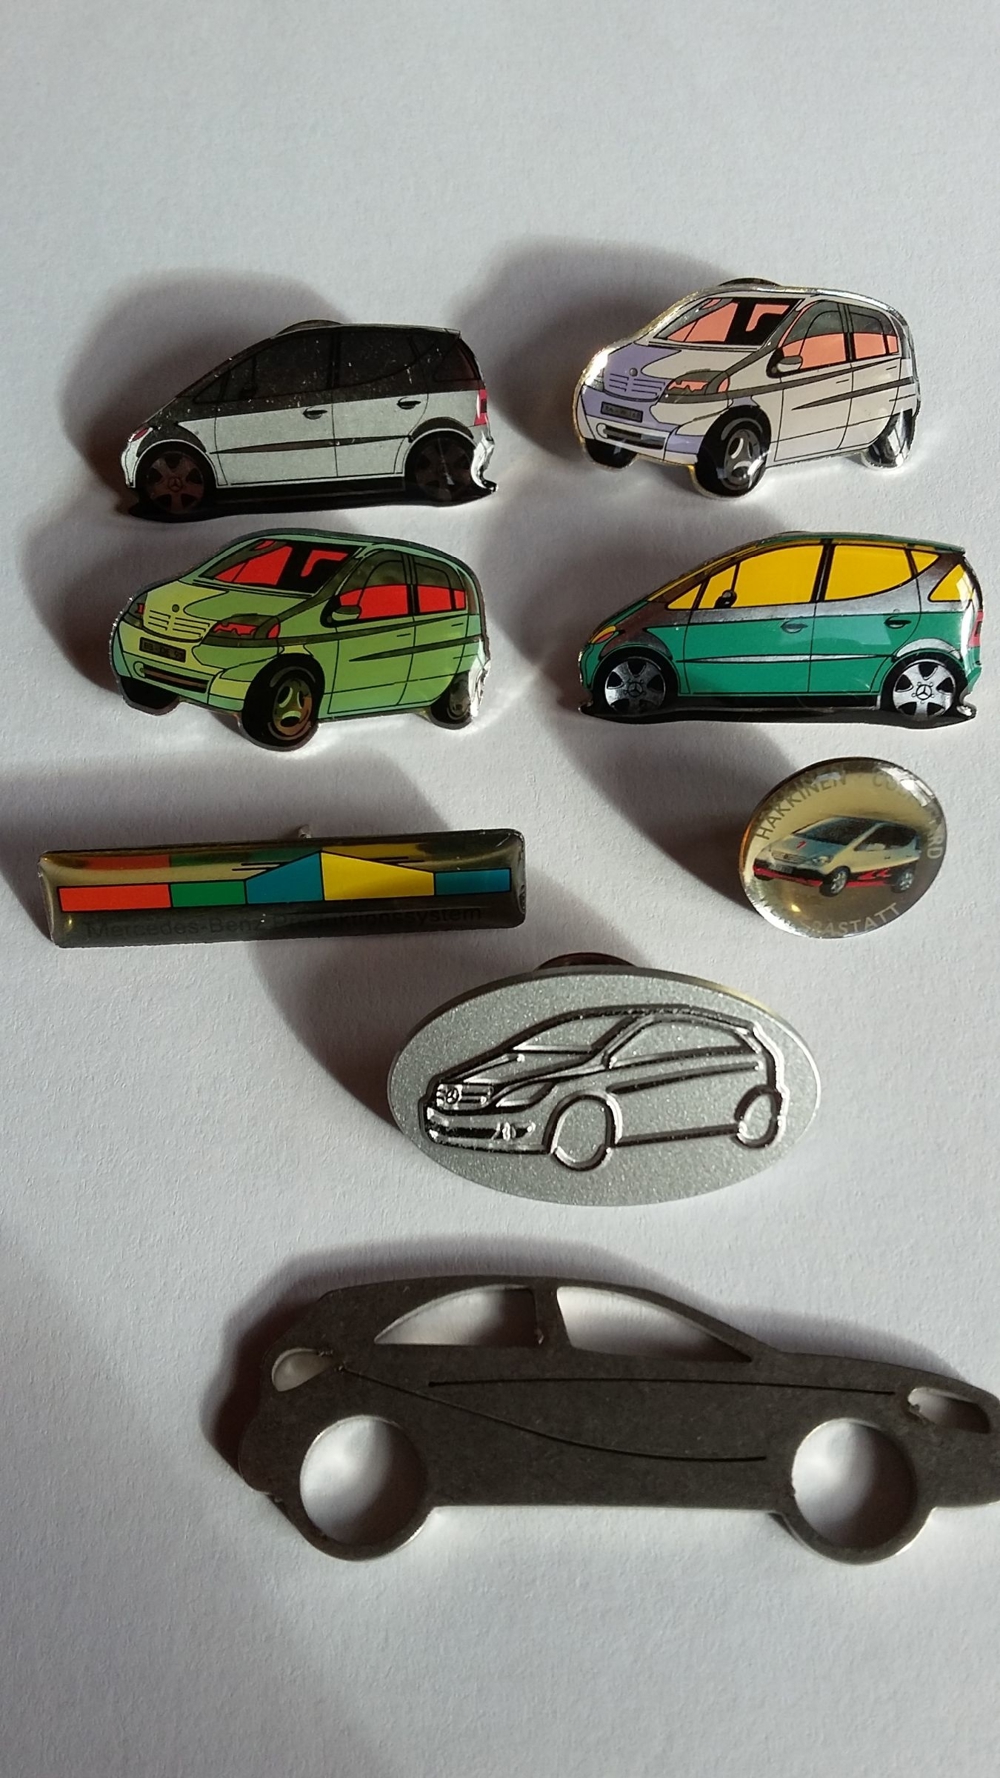 Sticker und Pins mit Mercedes-Benz-Motiven